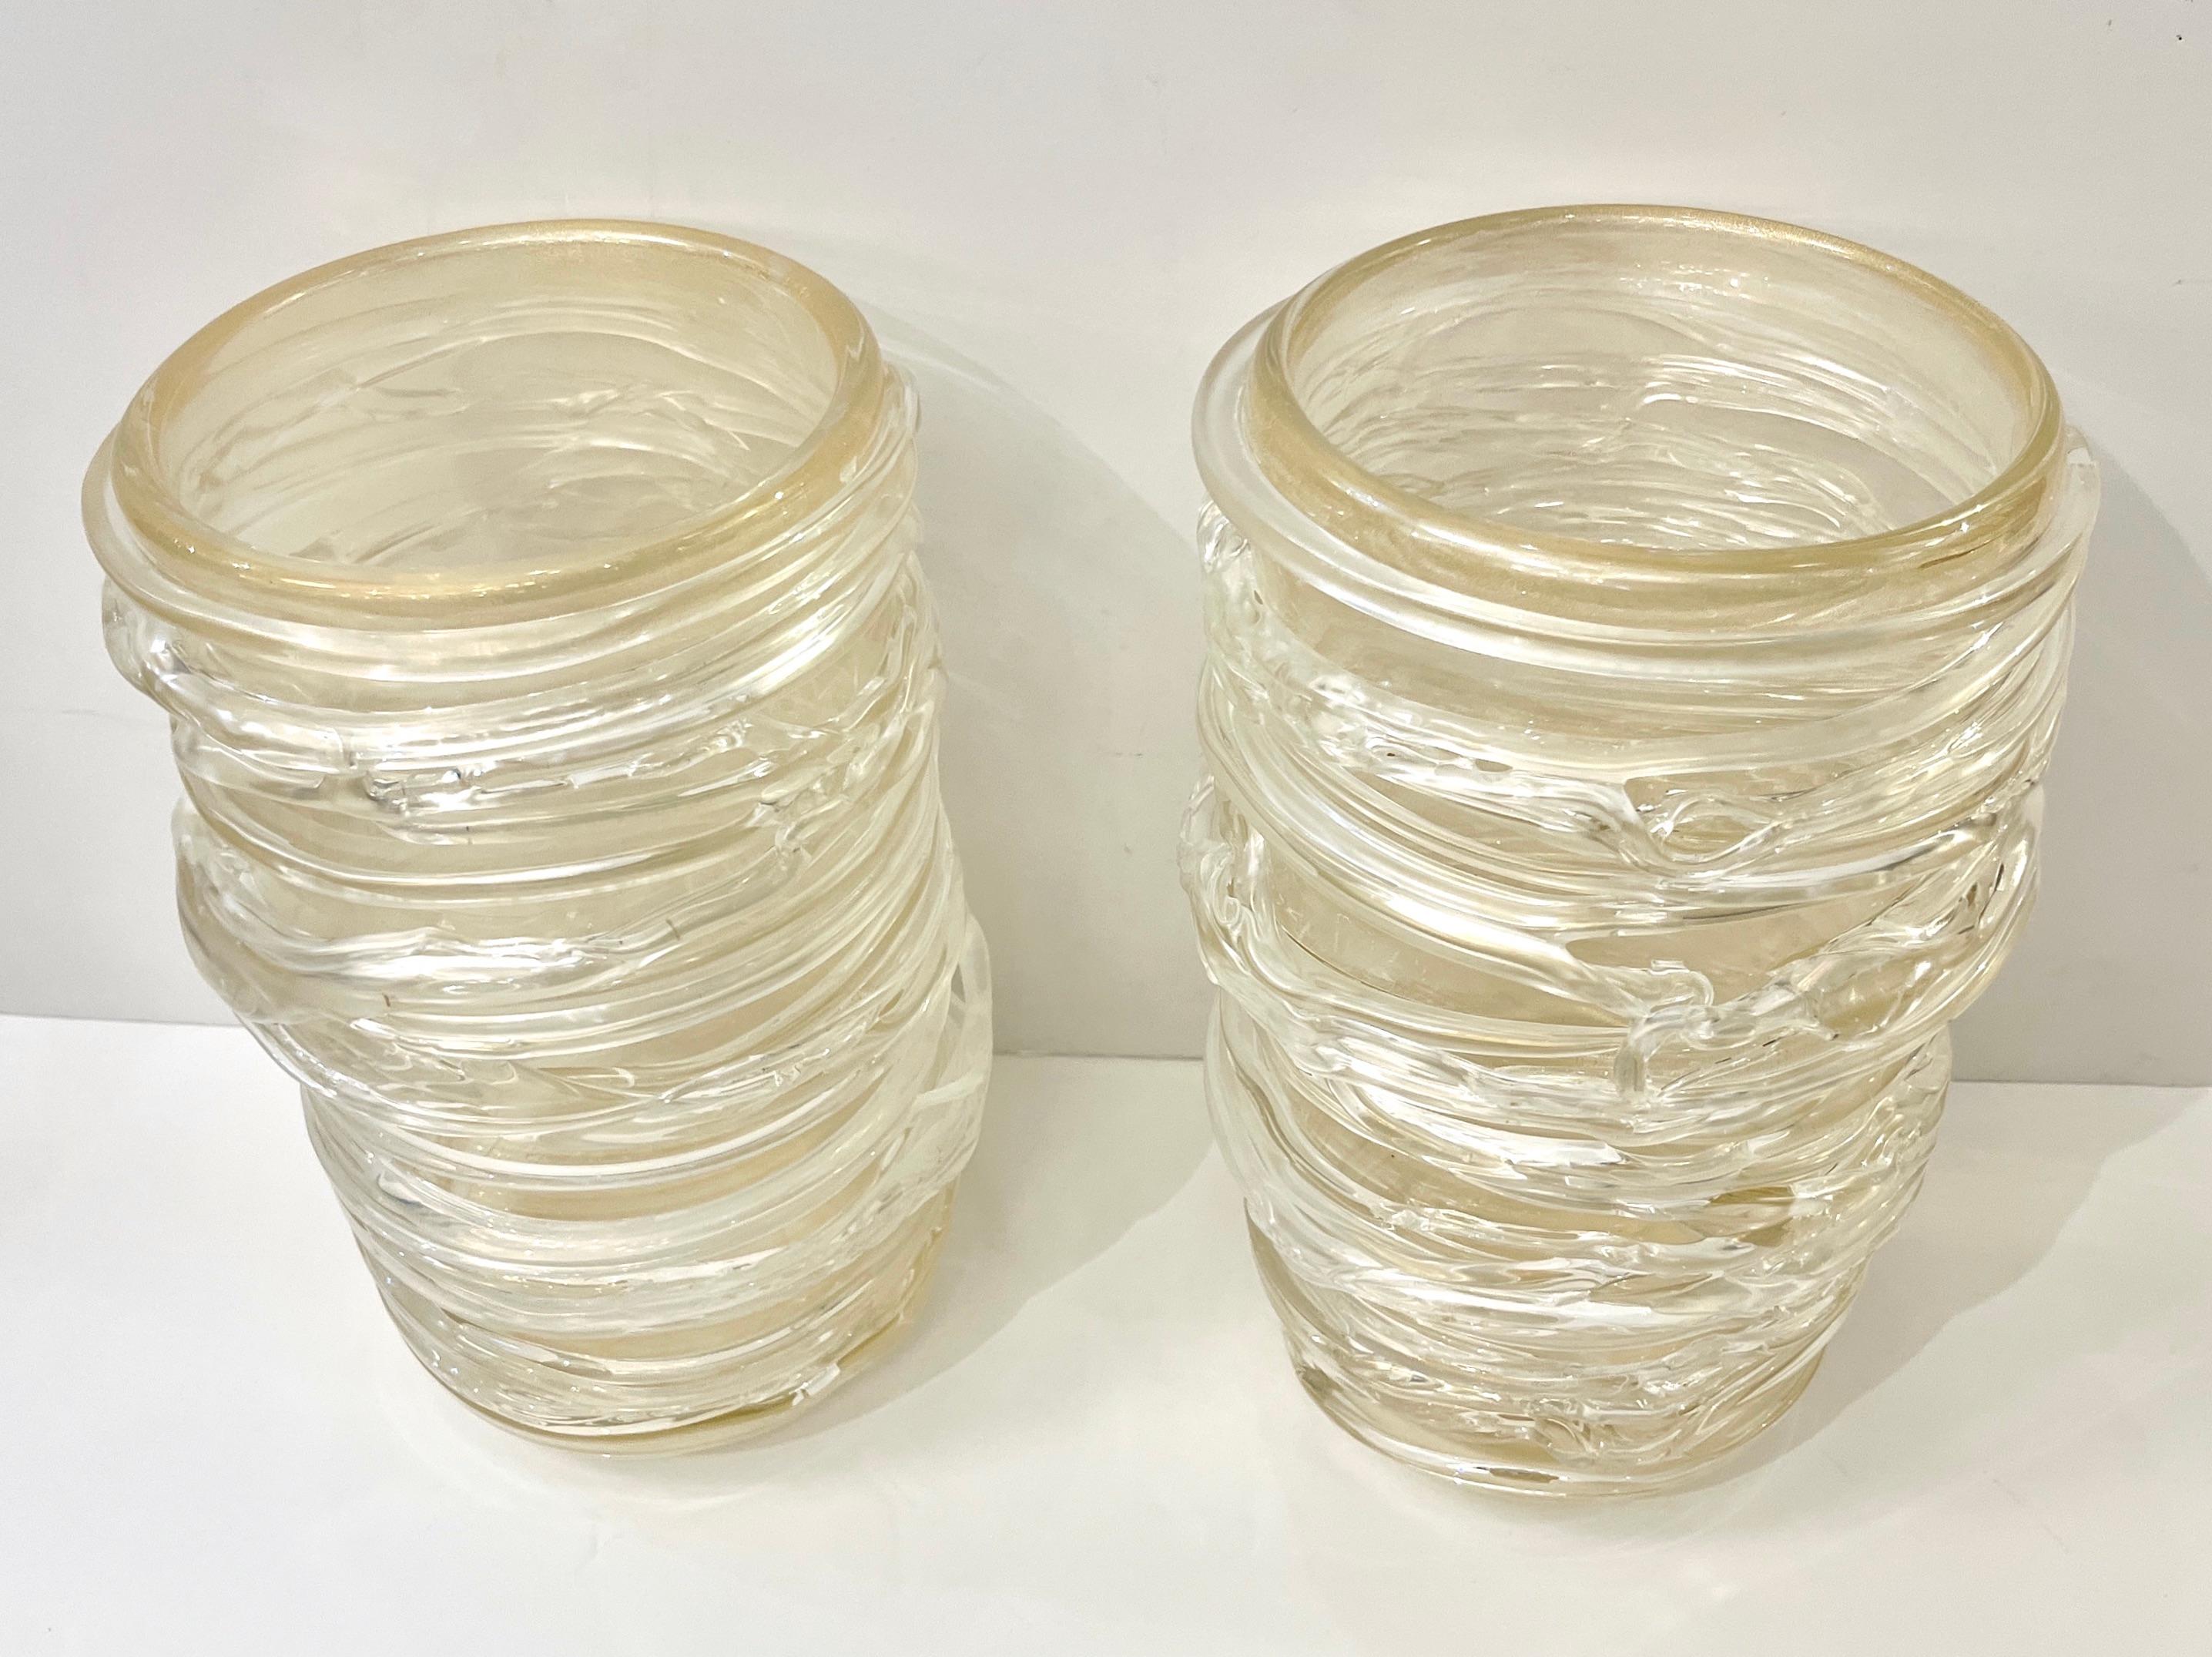 Atemberaubende Vasen aus hochwertigem Murano-Glas, deren Korpus mit einem postmodernen Dekor verziert ist, umwickelt mit irisierenden Fäden aus kristallklarem Glas, die frei von Hand in einem zarten, erhabenen Muster aufgetragen werden und so